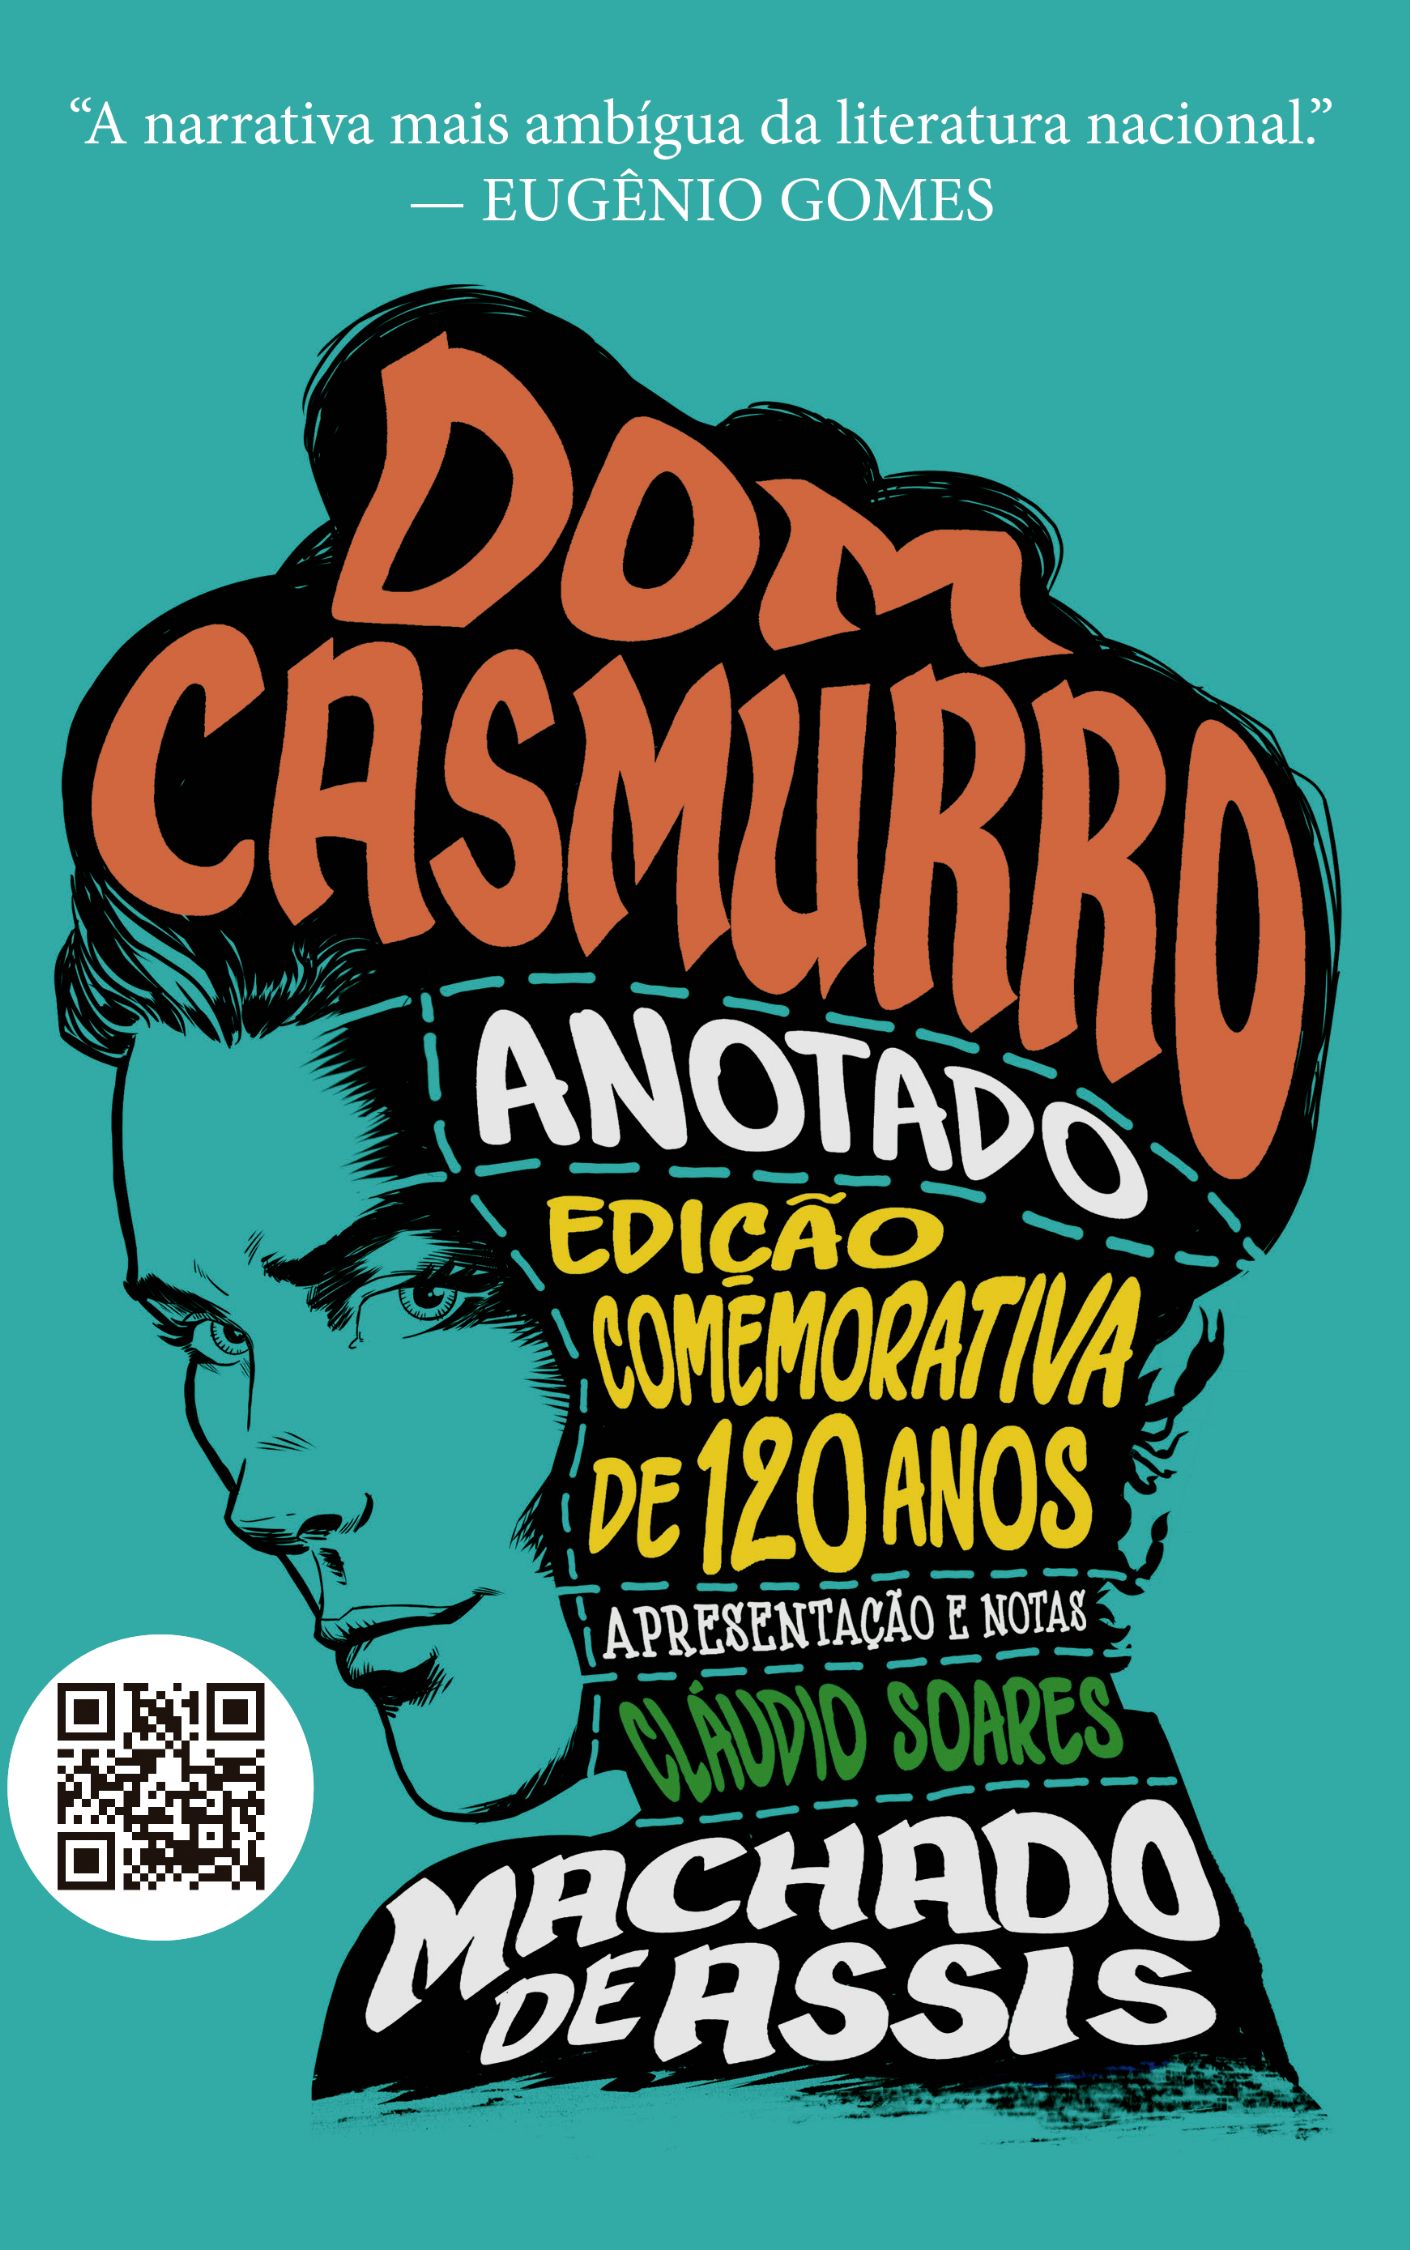 Dom Casmurro Anotado — Coleção Clássicos Anotados Volume 2 - Obliq Livros —  Especializados em clássicos da literatura brasileira.